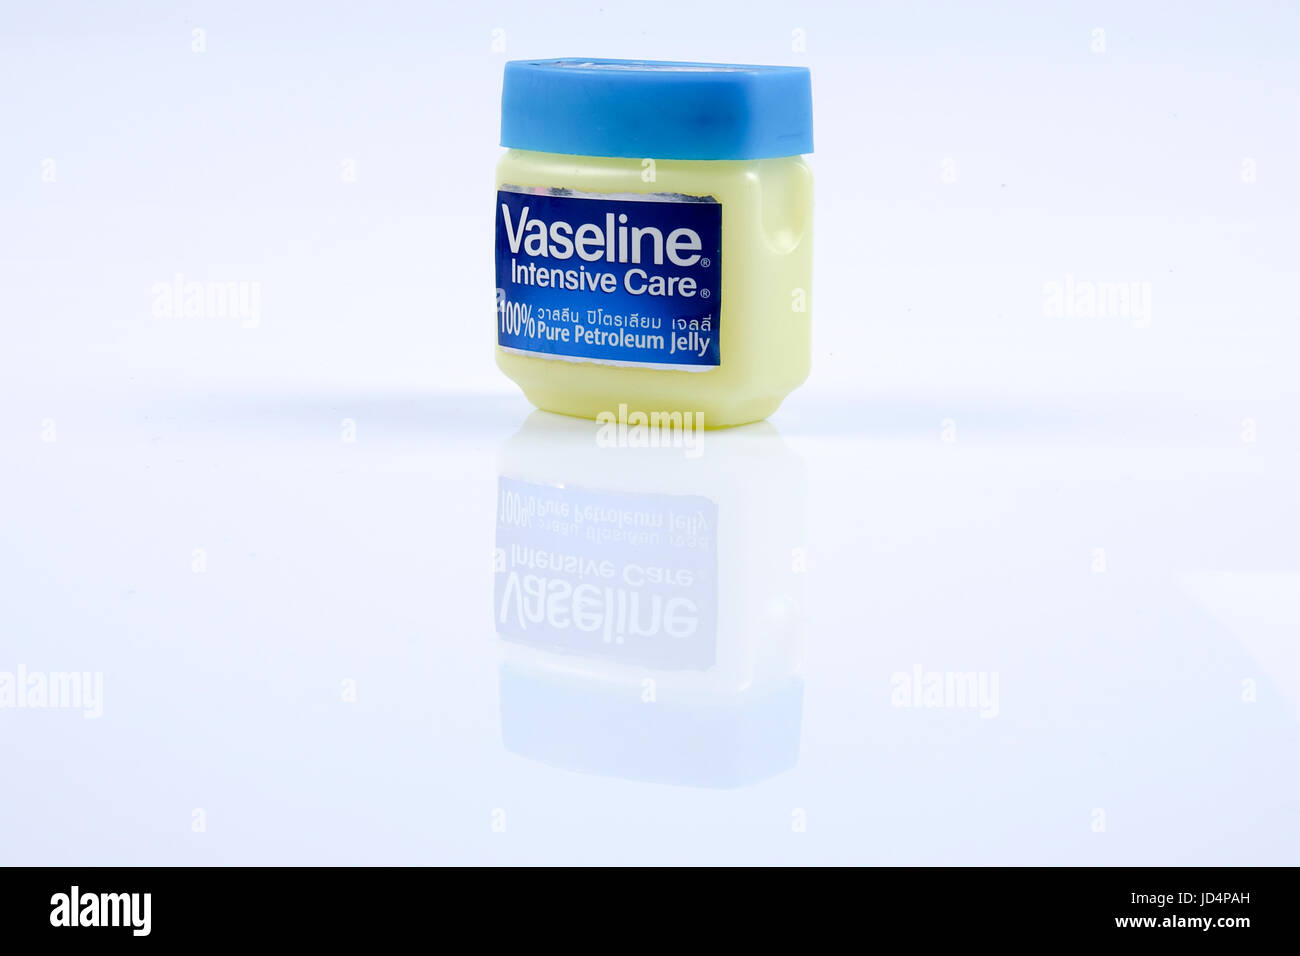 KUALA LUMPUR - 26 DEC 2016: Jar of Vaseline petroleum jelly on white background. Stock Photo